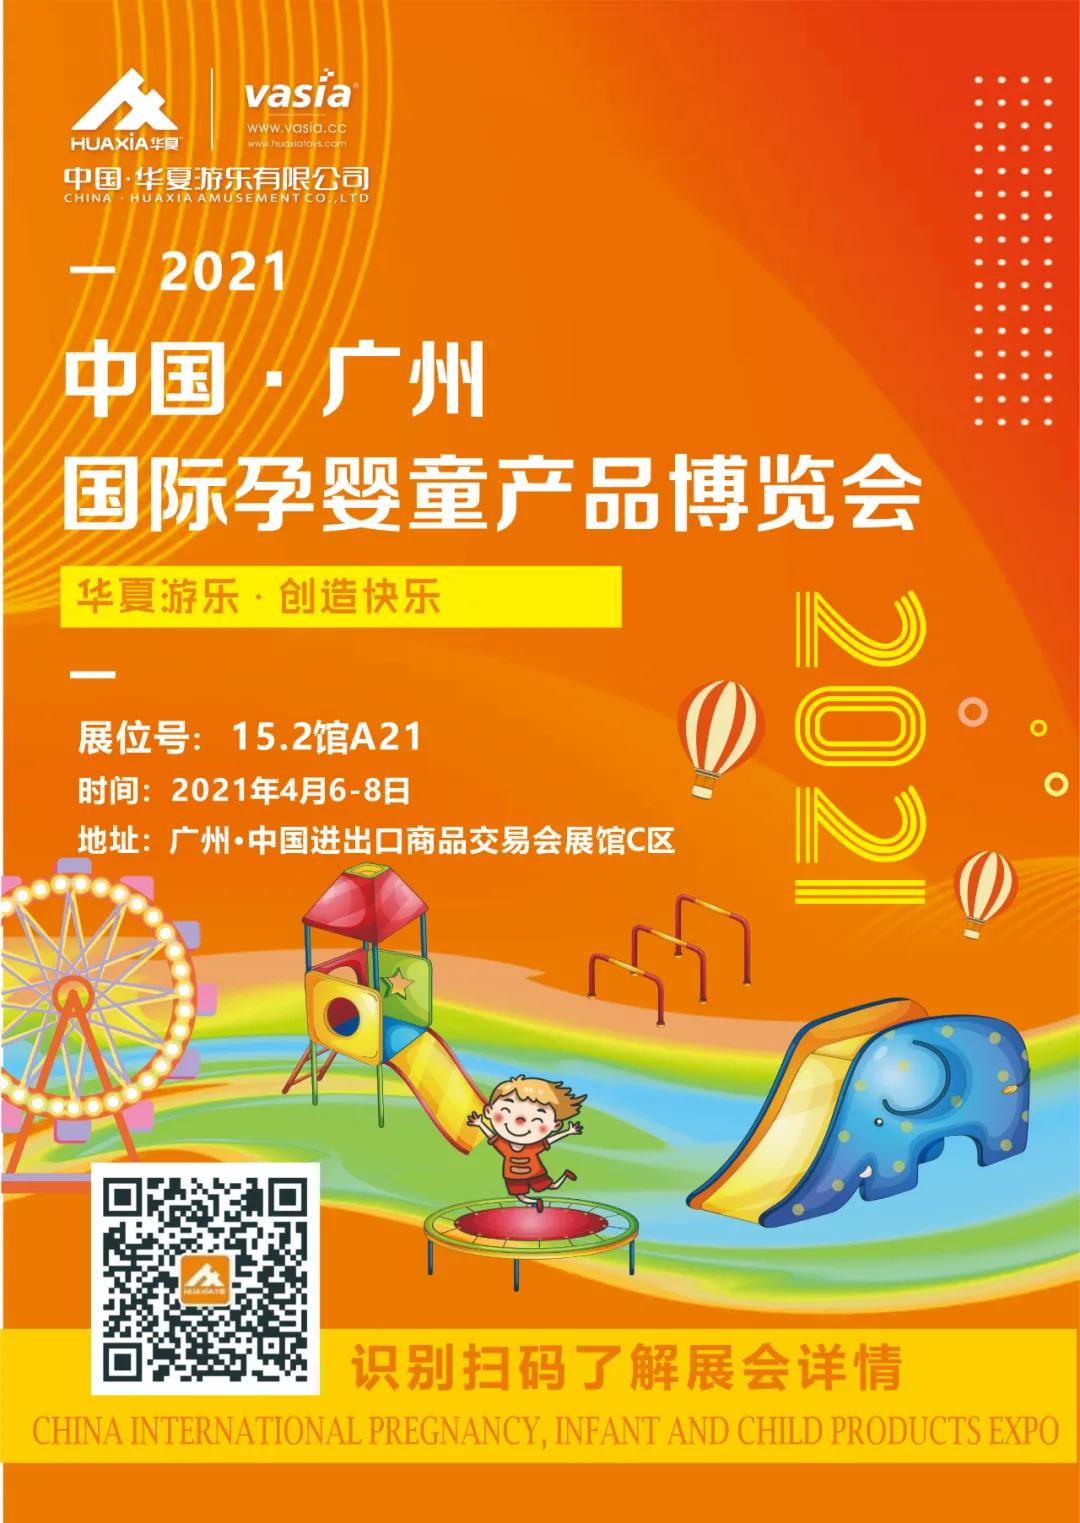 華夏游樂與您相約廣州國際孕嬰童產品博覽會